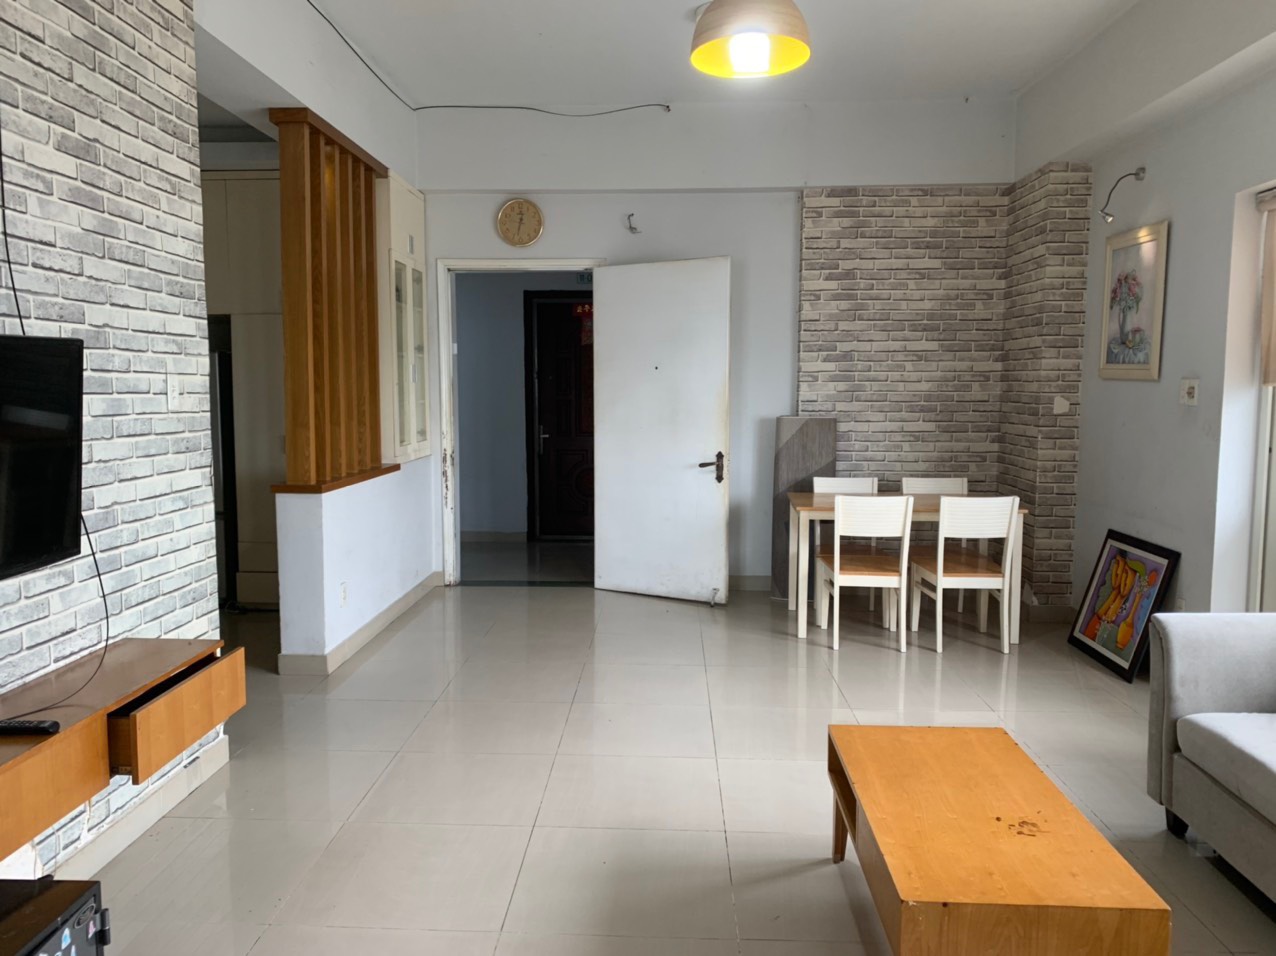 Chuyên cho thuê căn hộ Minh Thành Quận 7 nhà trống 9tr/tháng,Full nội thất từ 10tr/tháng .LH 0909802822 Trân